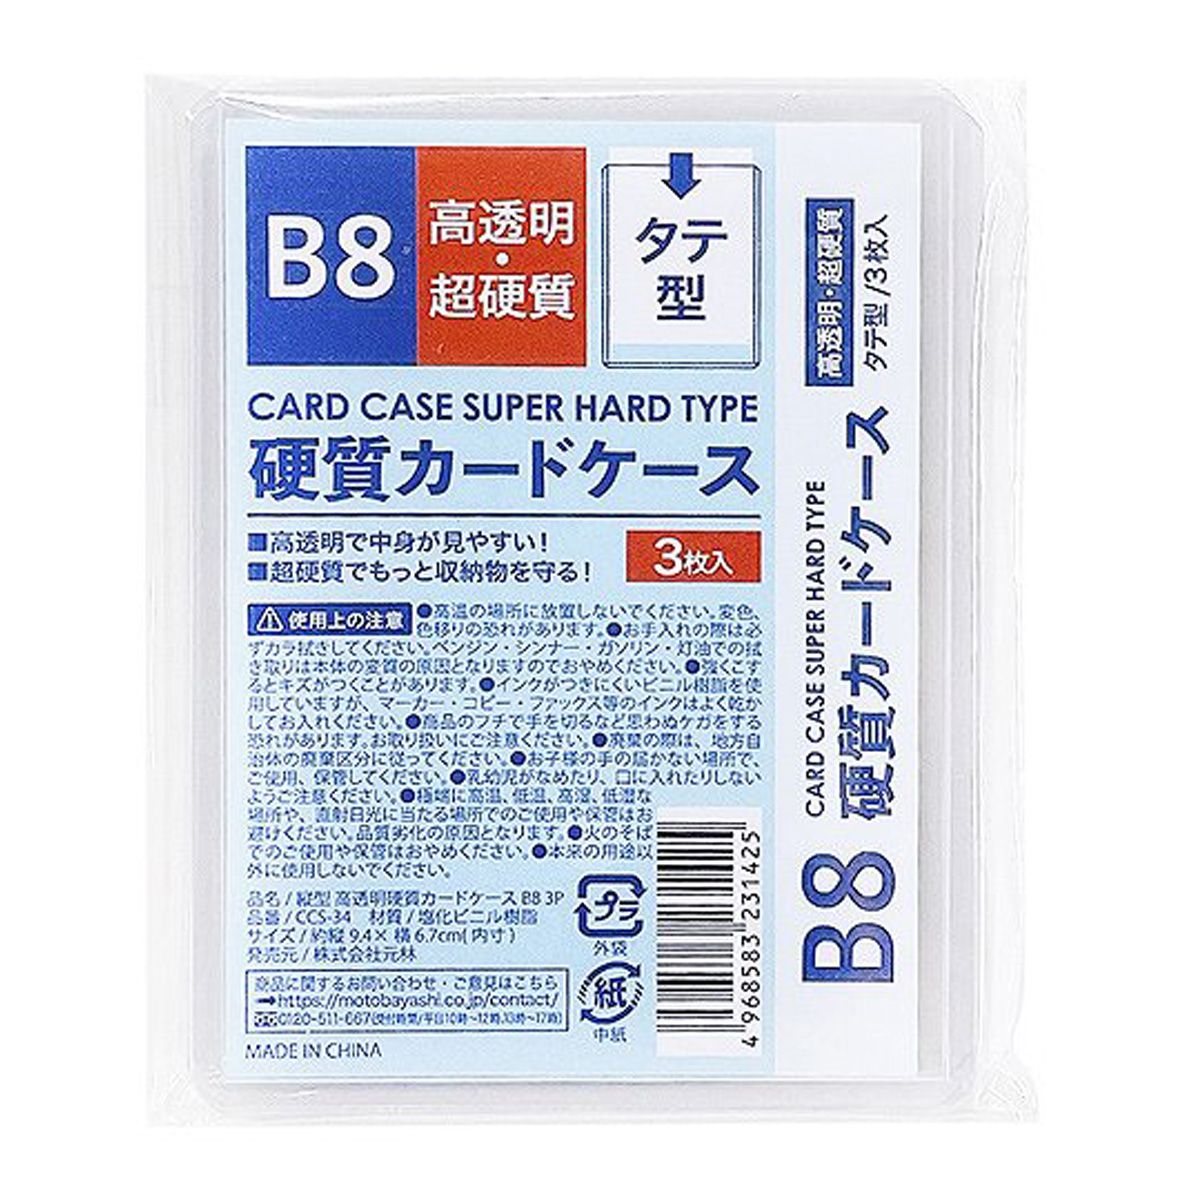 硬質カードケース 縦型超硬質ケース B8 3P 0948/352132